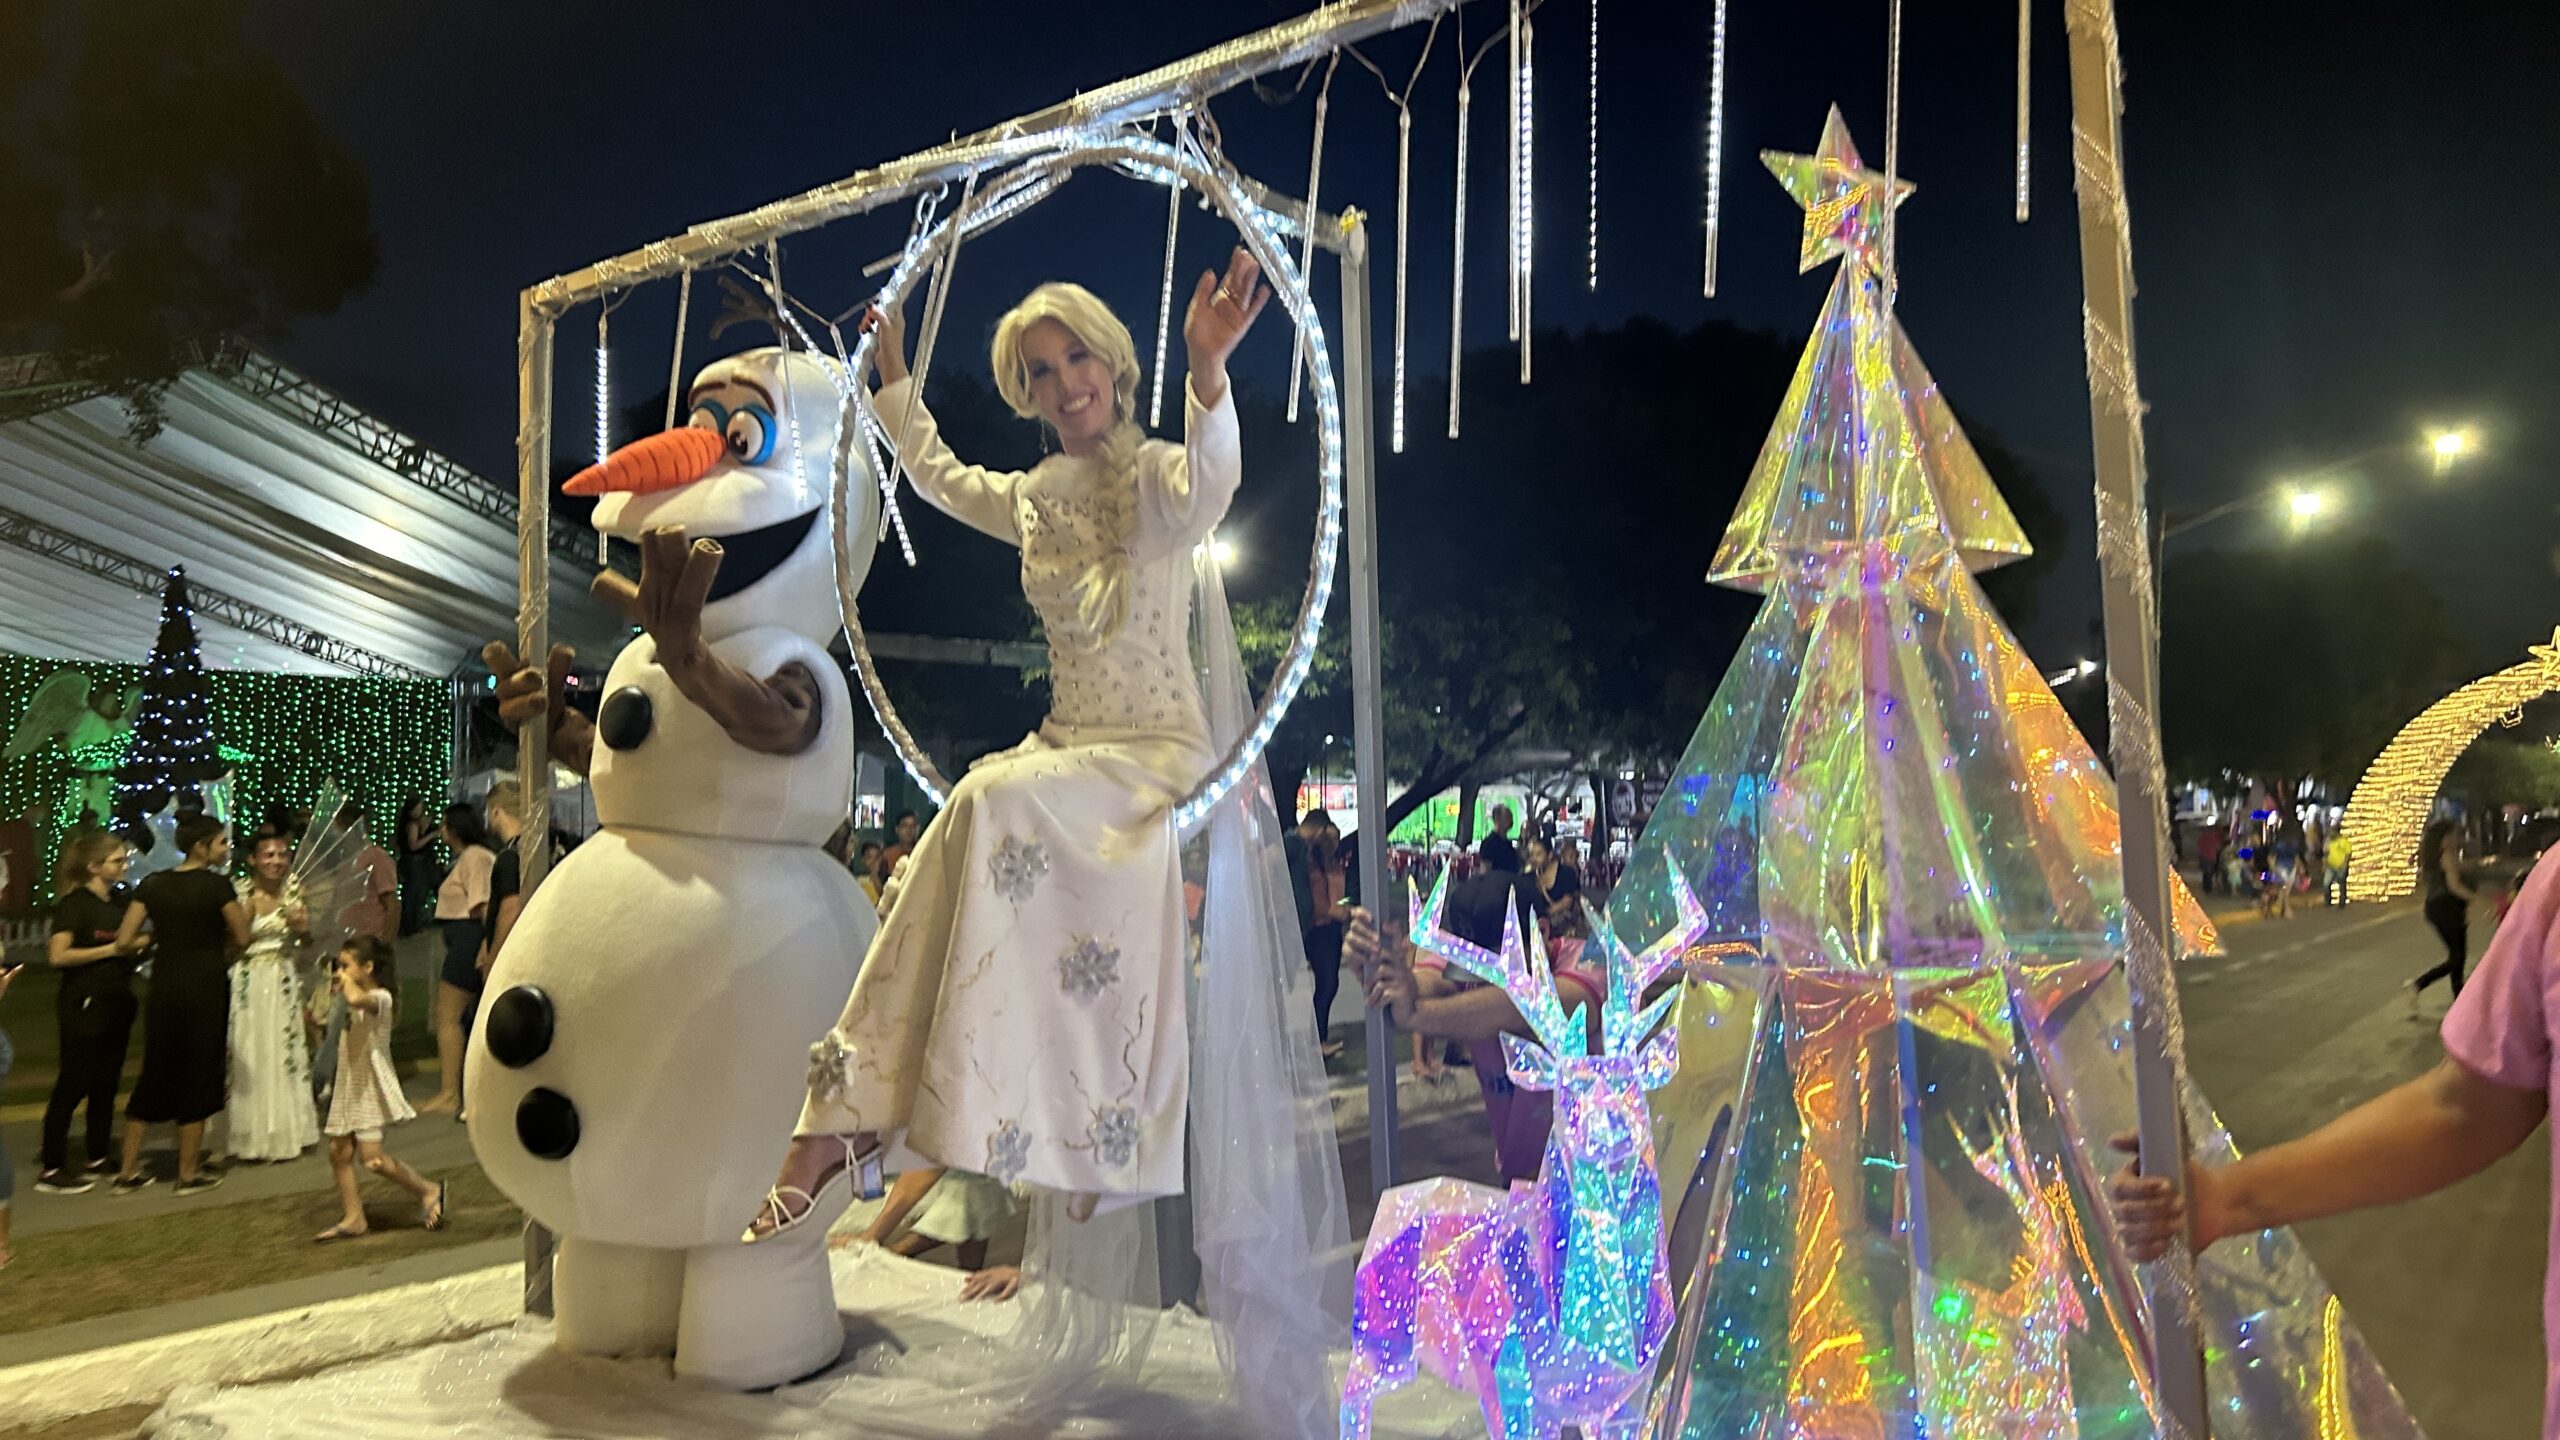 Parada natalina com 90 personagens será hoje em Sinop; roda gigante fica até amanhã